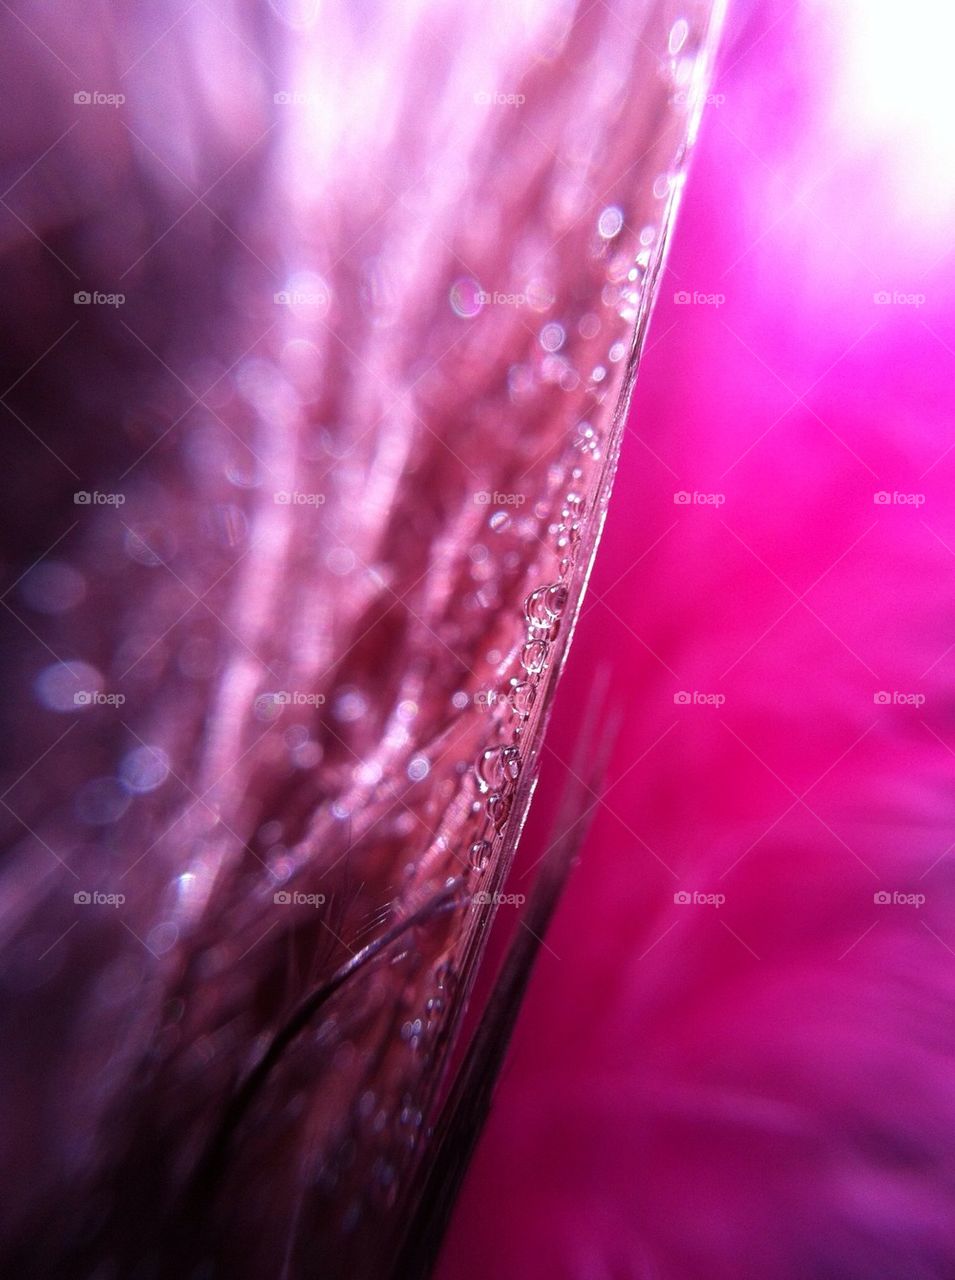 landscape sweden pink macro by miss_falcon